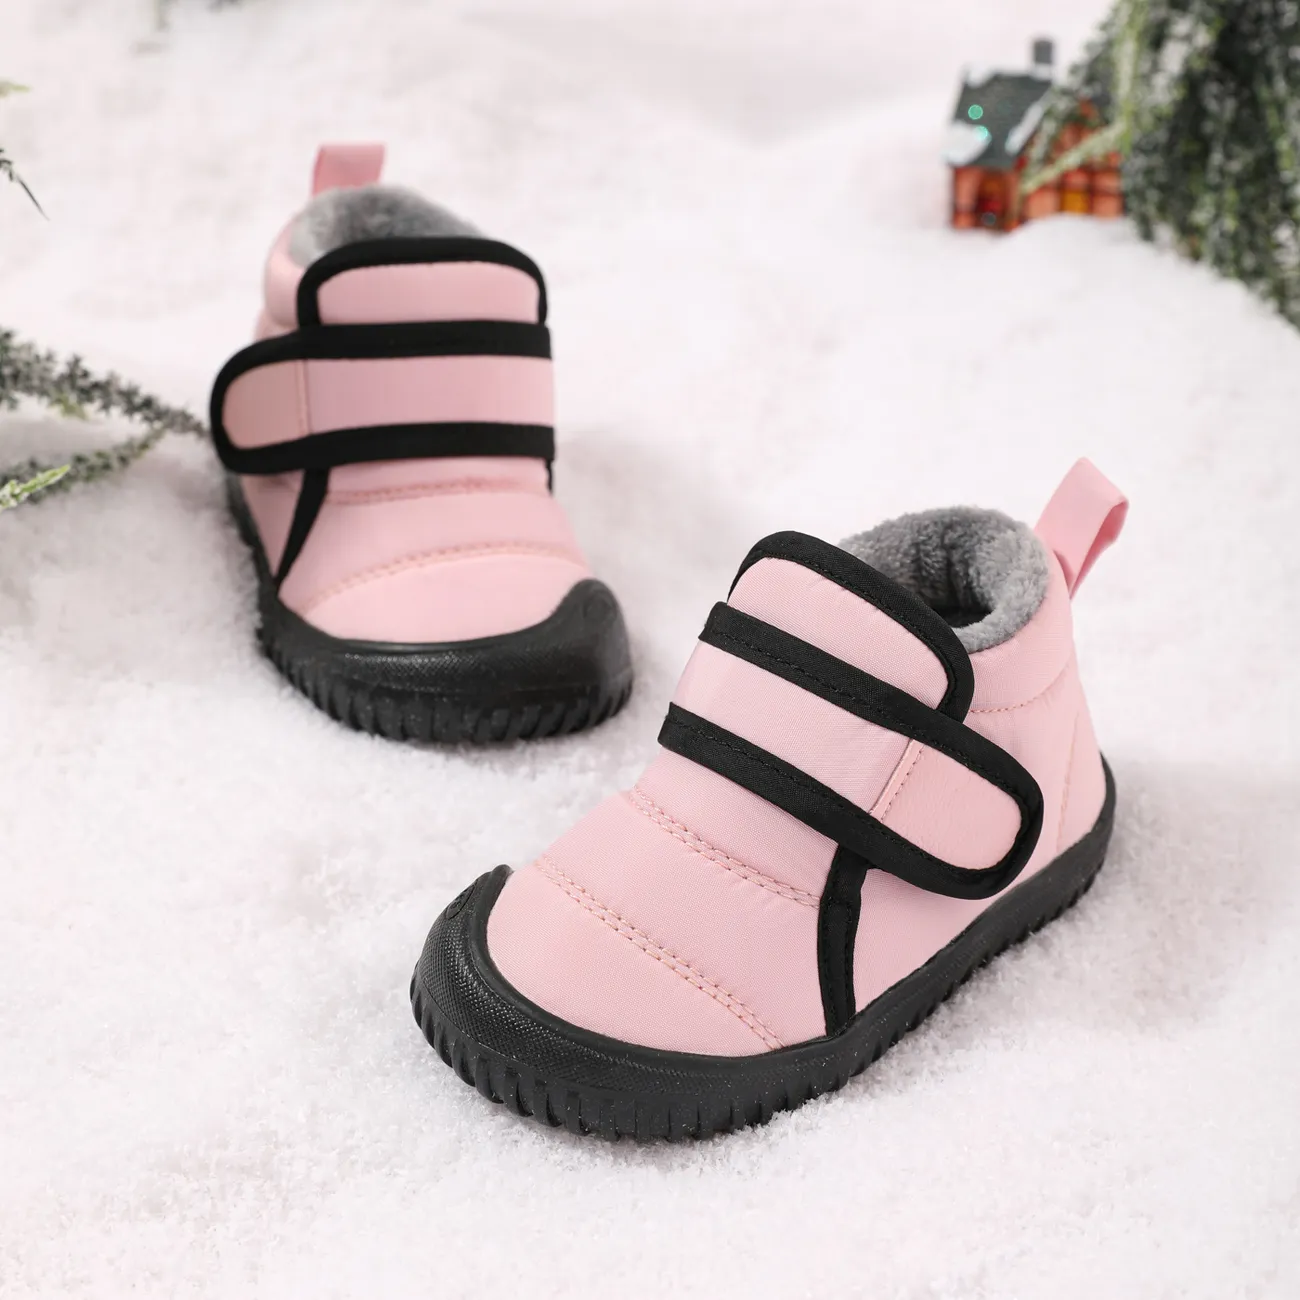 botas de nieve impermeables con forro polar para niños pequeños Rosa claro big image 1